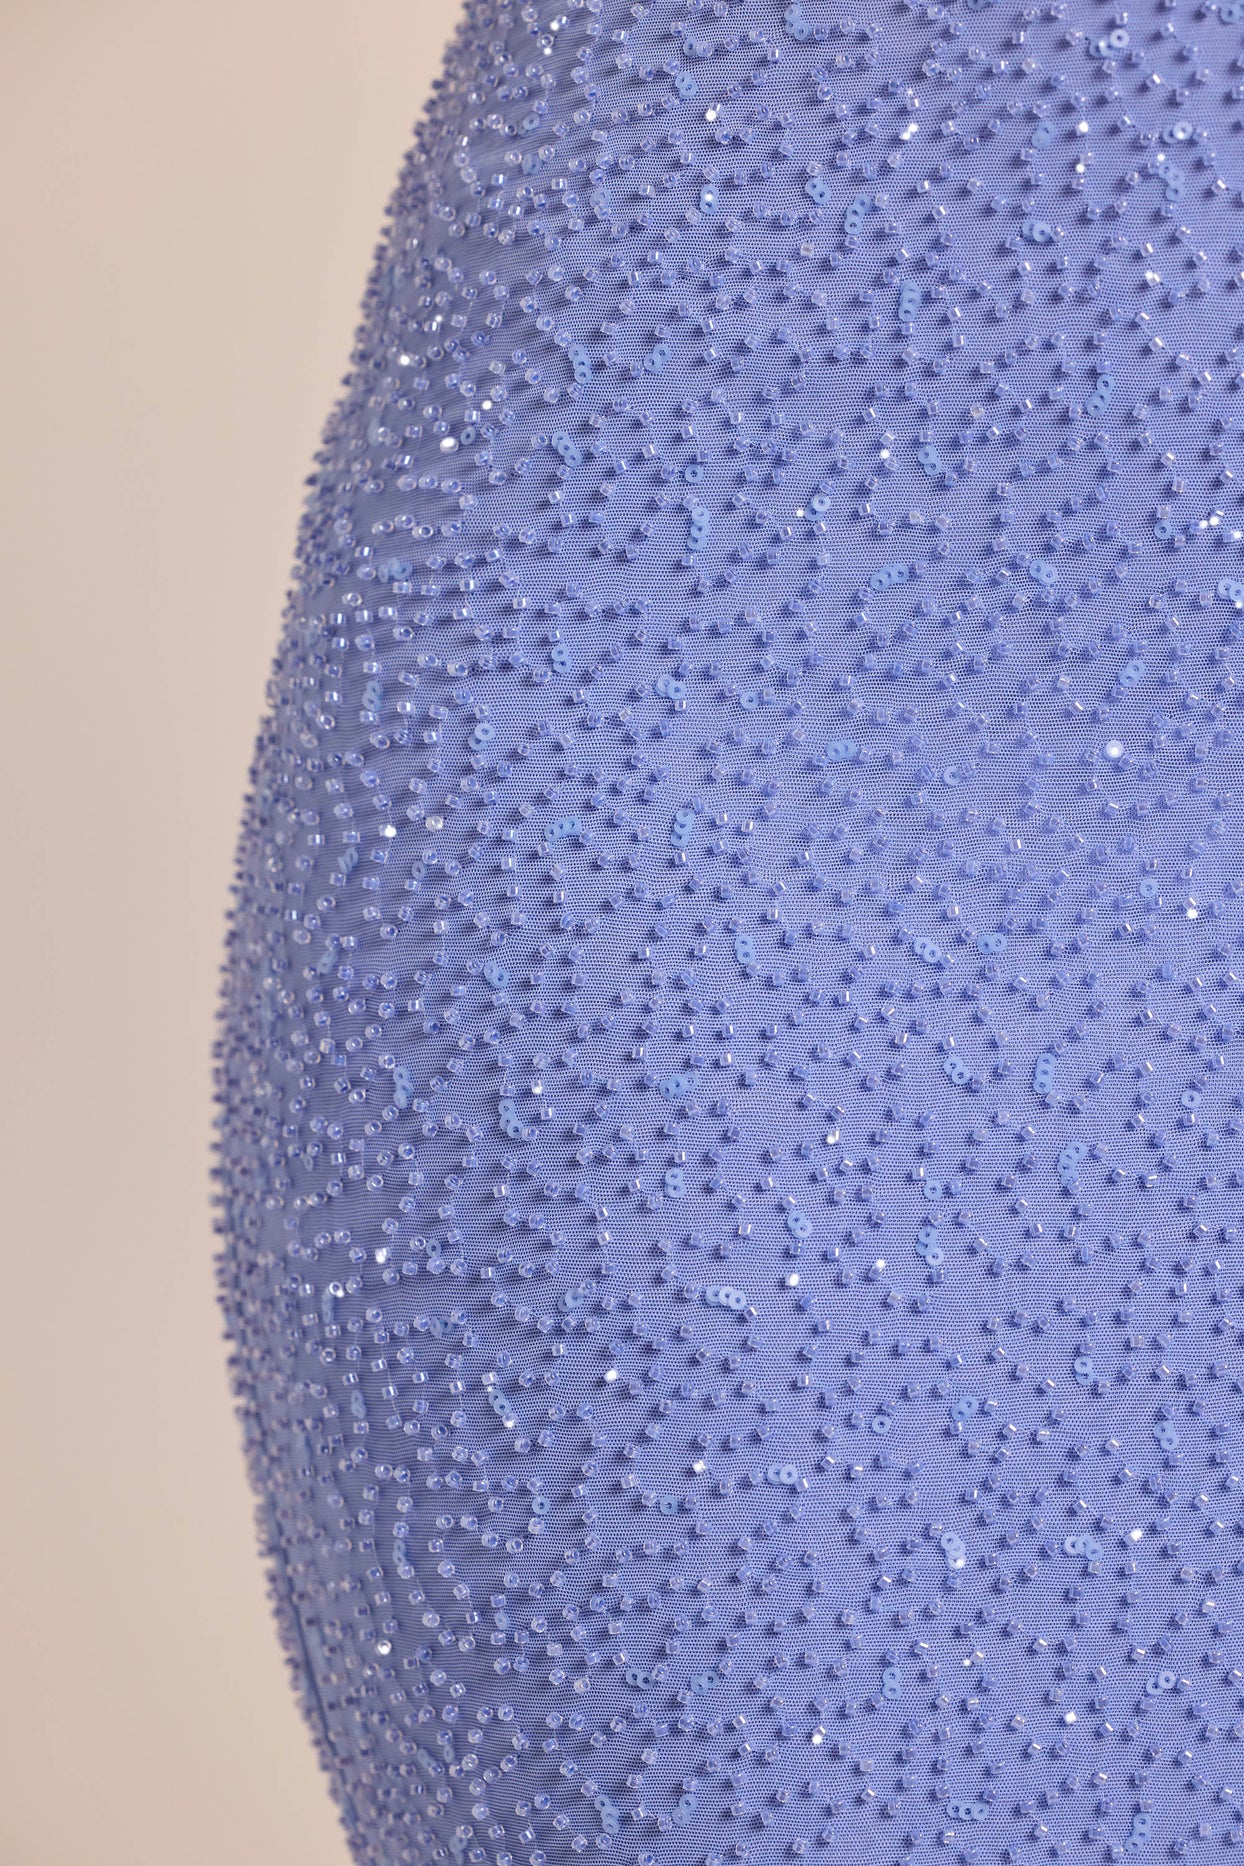 Ozdobiona spódnica maxi ze średnim stanem w kolorze pudrowego błękitu